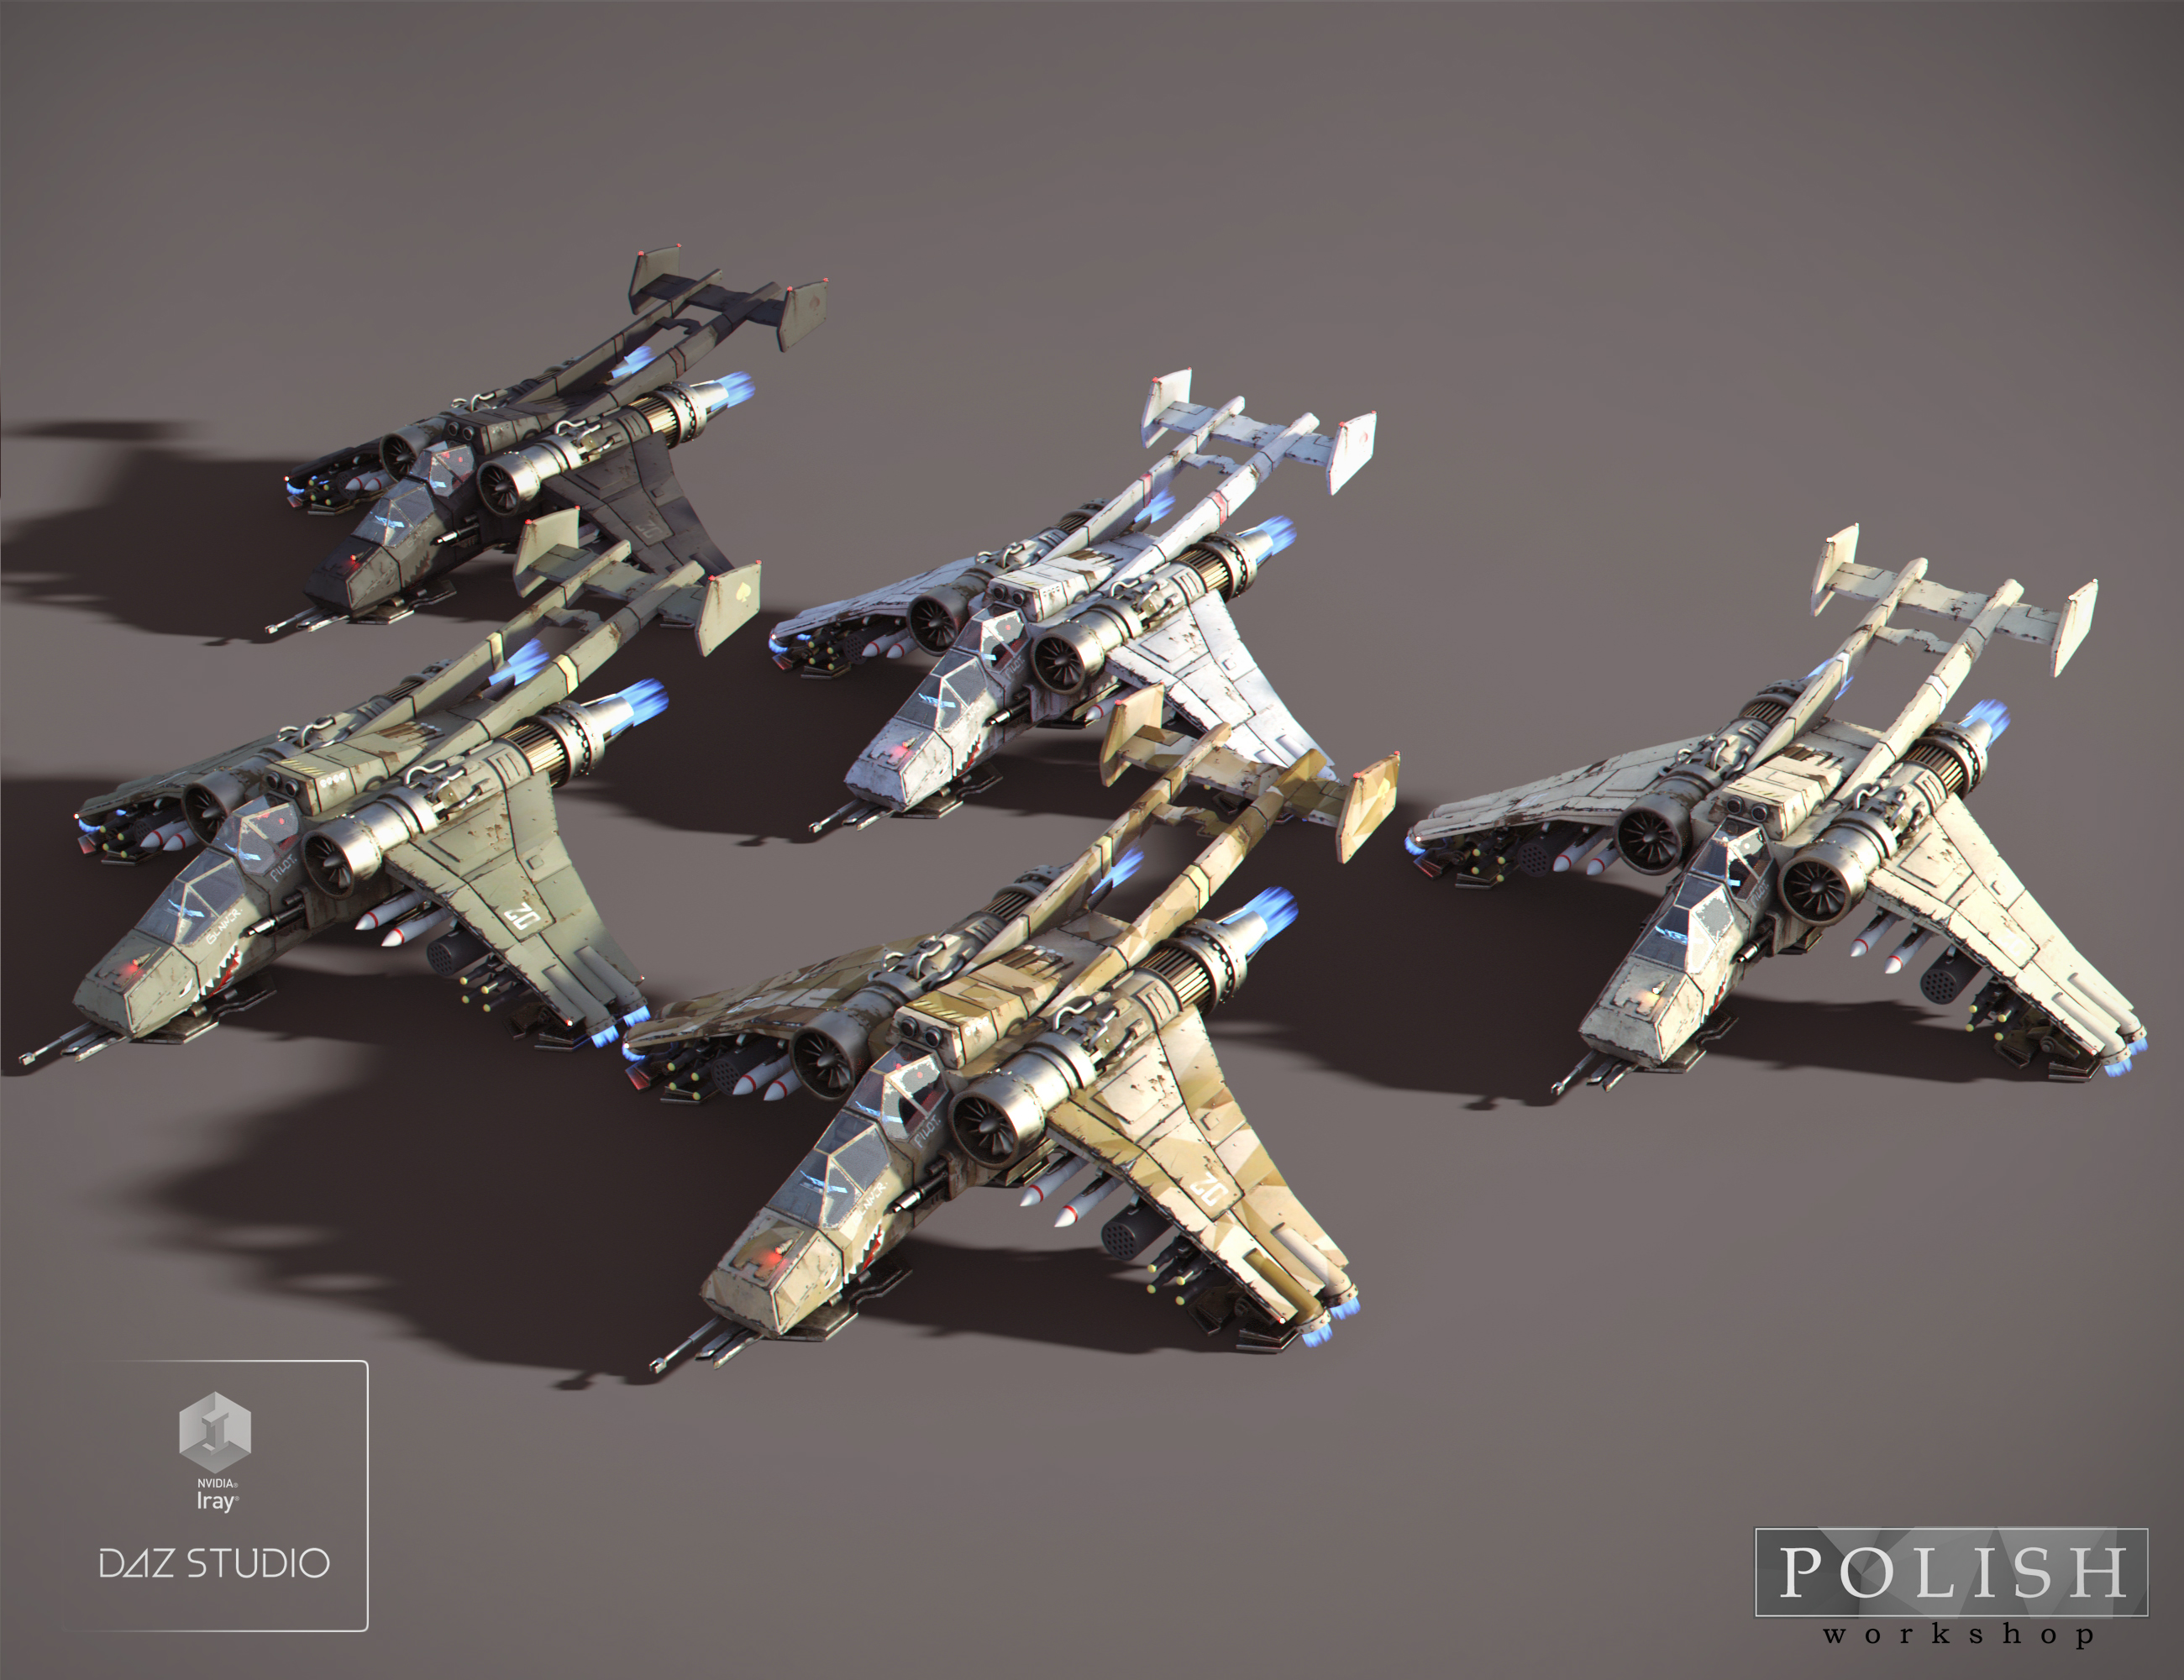 SharkT Air Striker by: Polish, 3D Models by Daz 3D